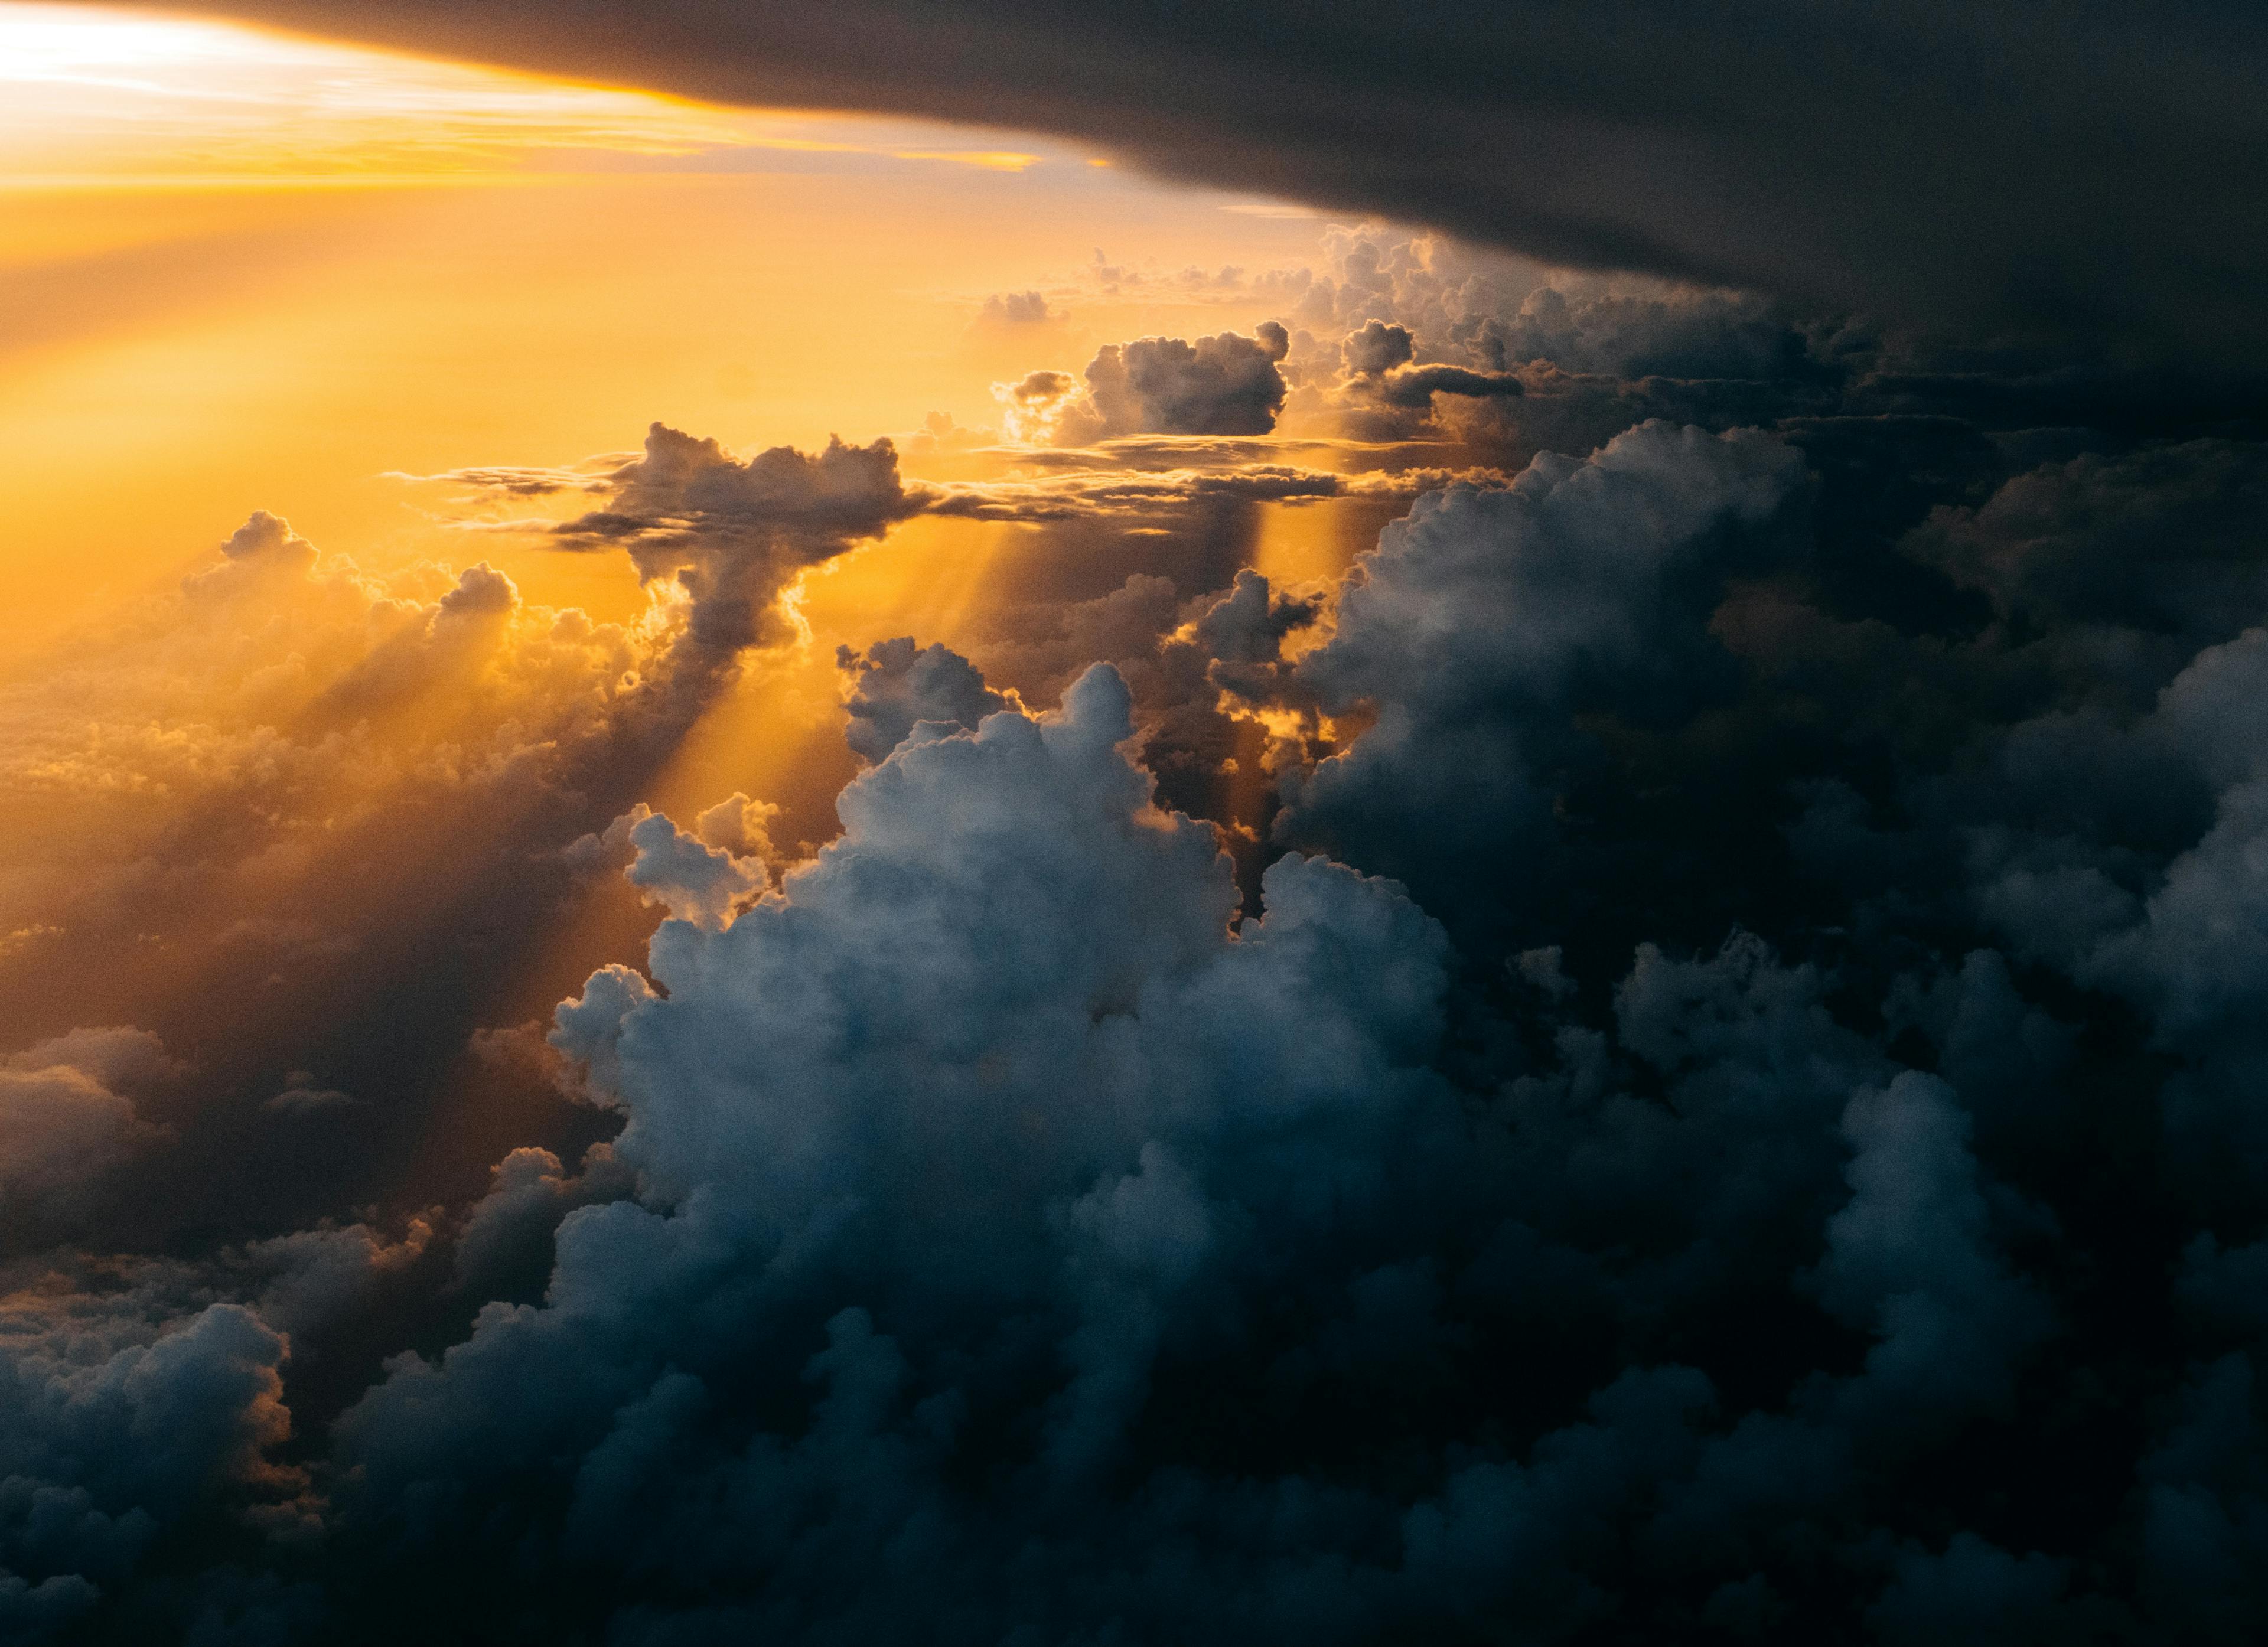 Sunset in the clouds (Tom Barrett  |  unsplash.com)